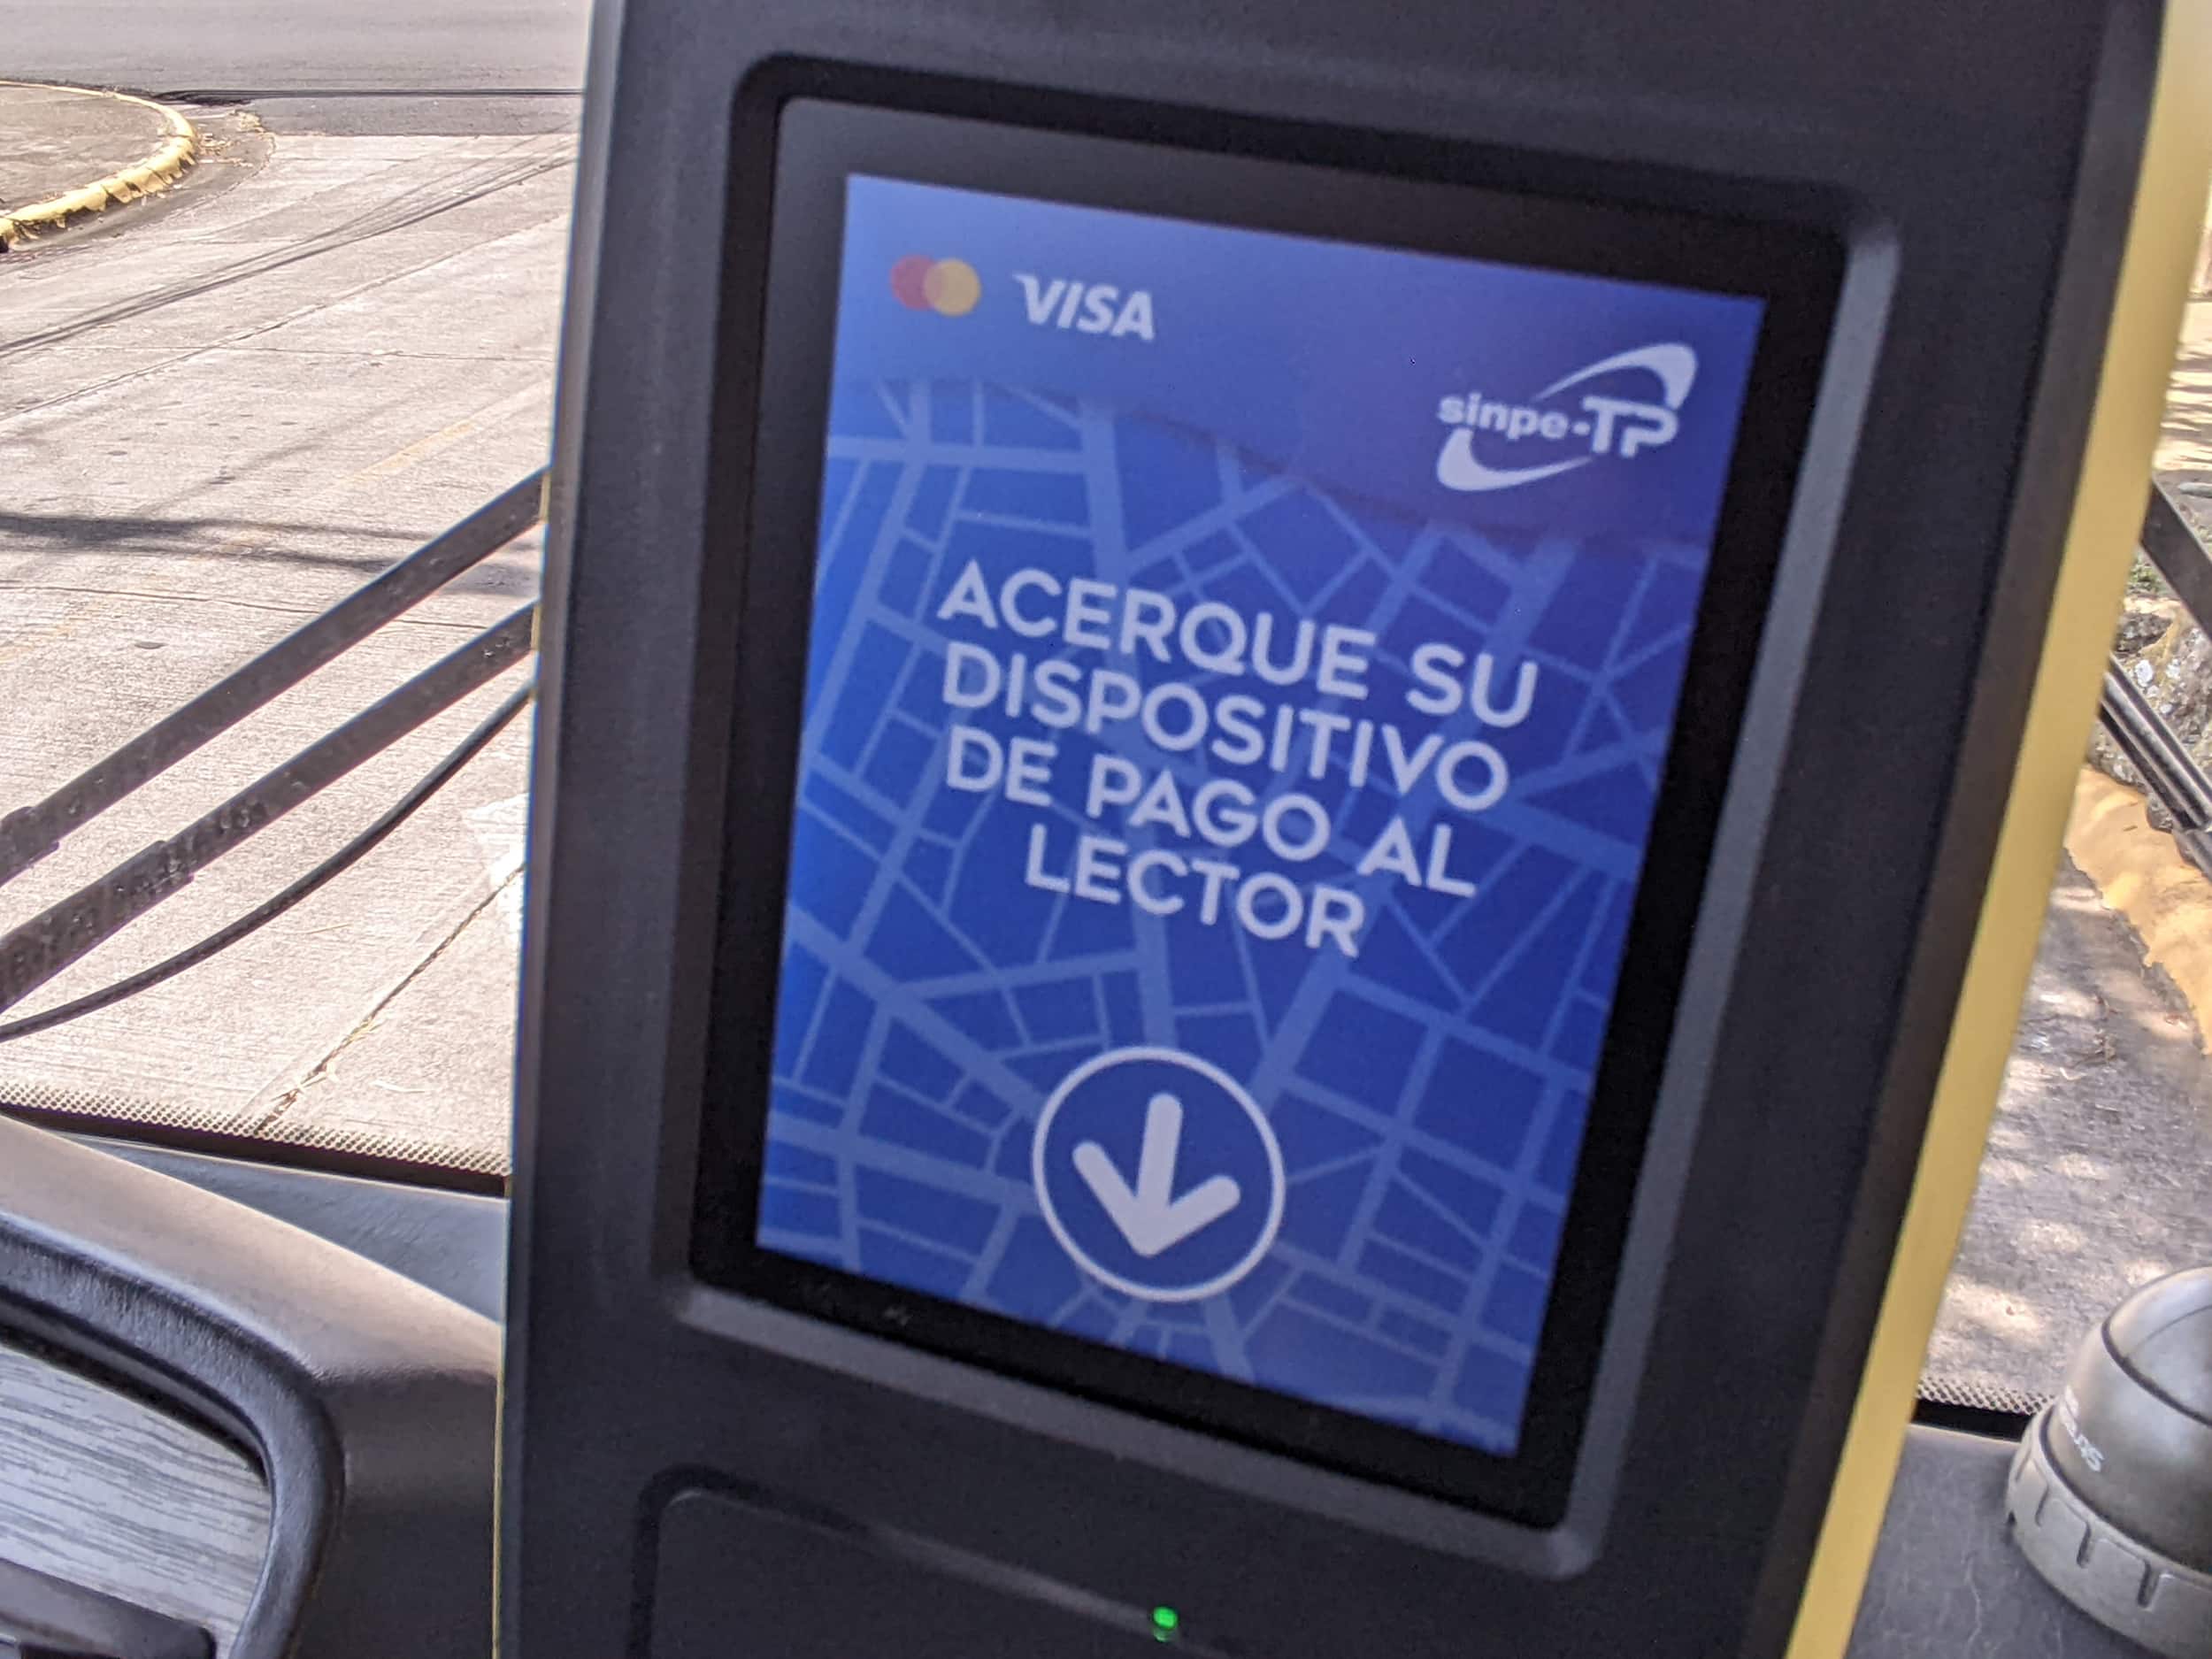 Aresep: Costos asociados al pago electrónico en autobuses se incorporarán en la tarifa